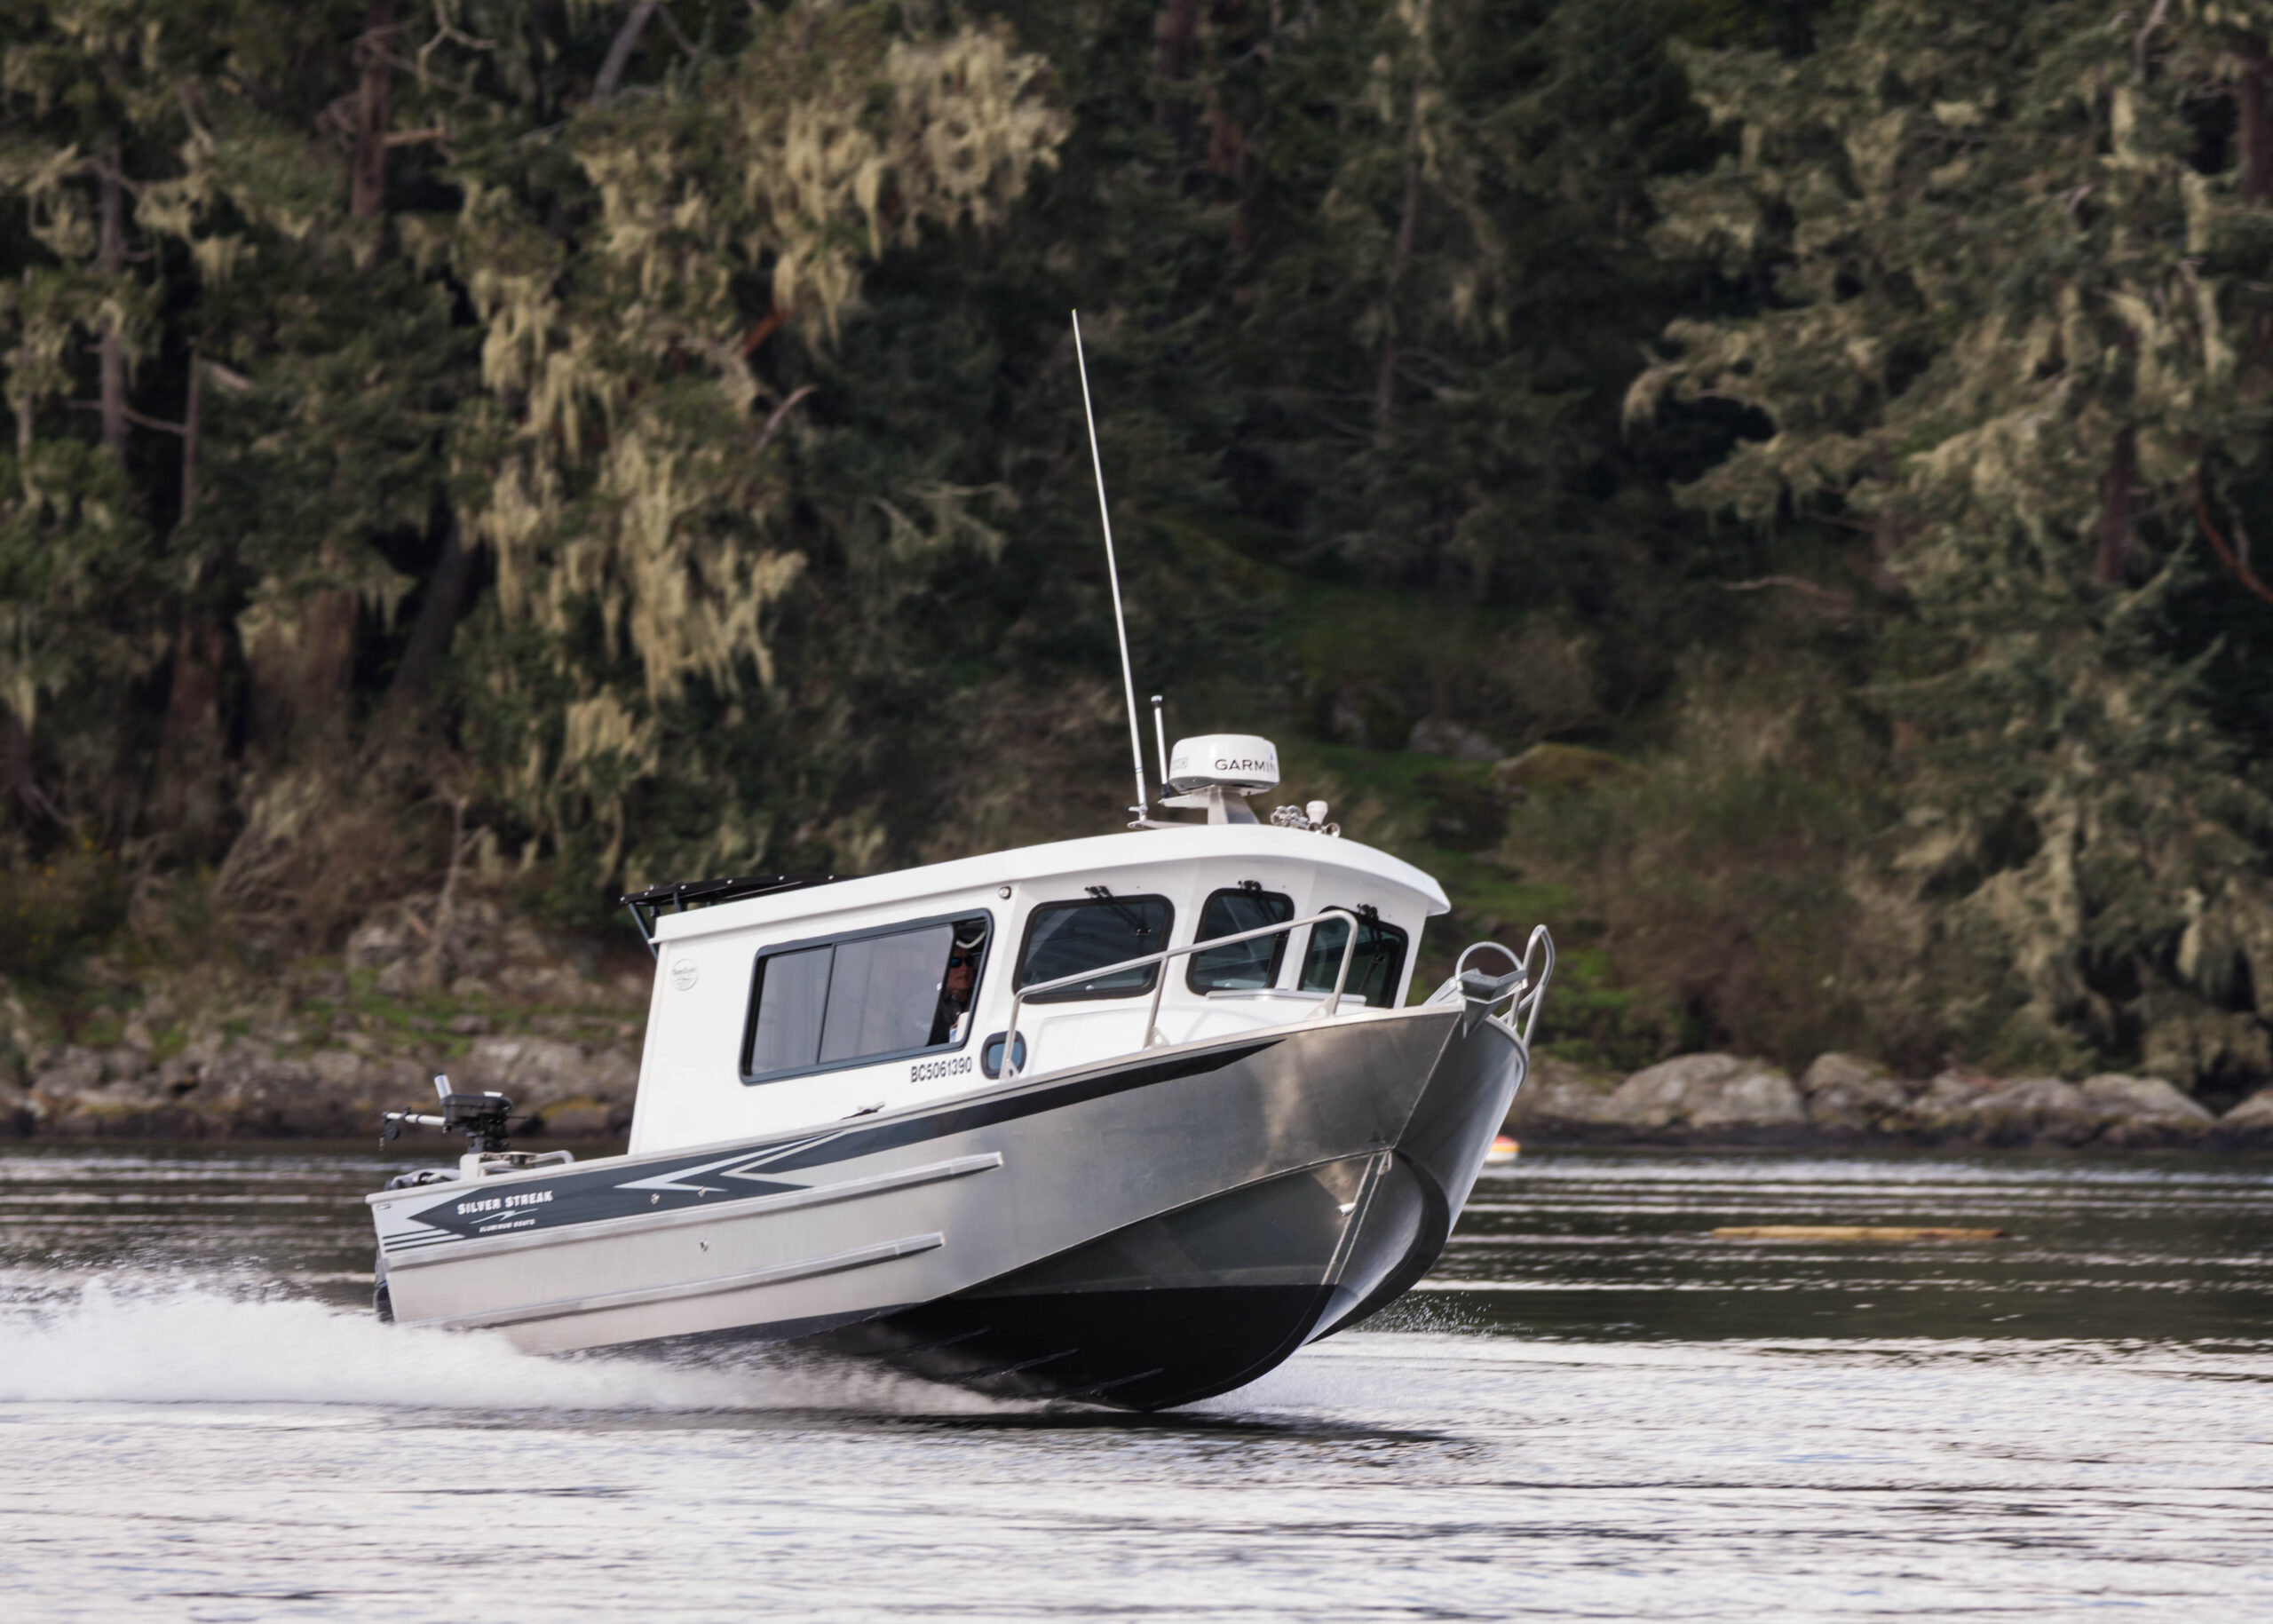 25' Swiftsure - Aluminum Cabin Boat by Silver Streak Boats